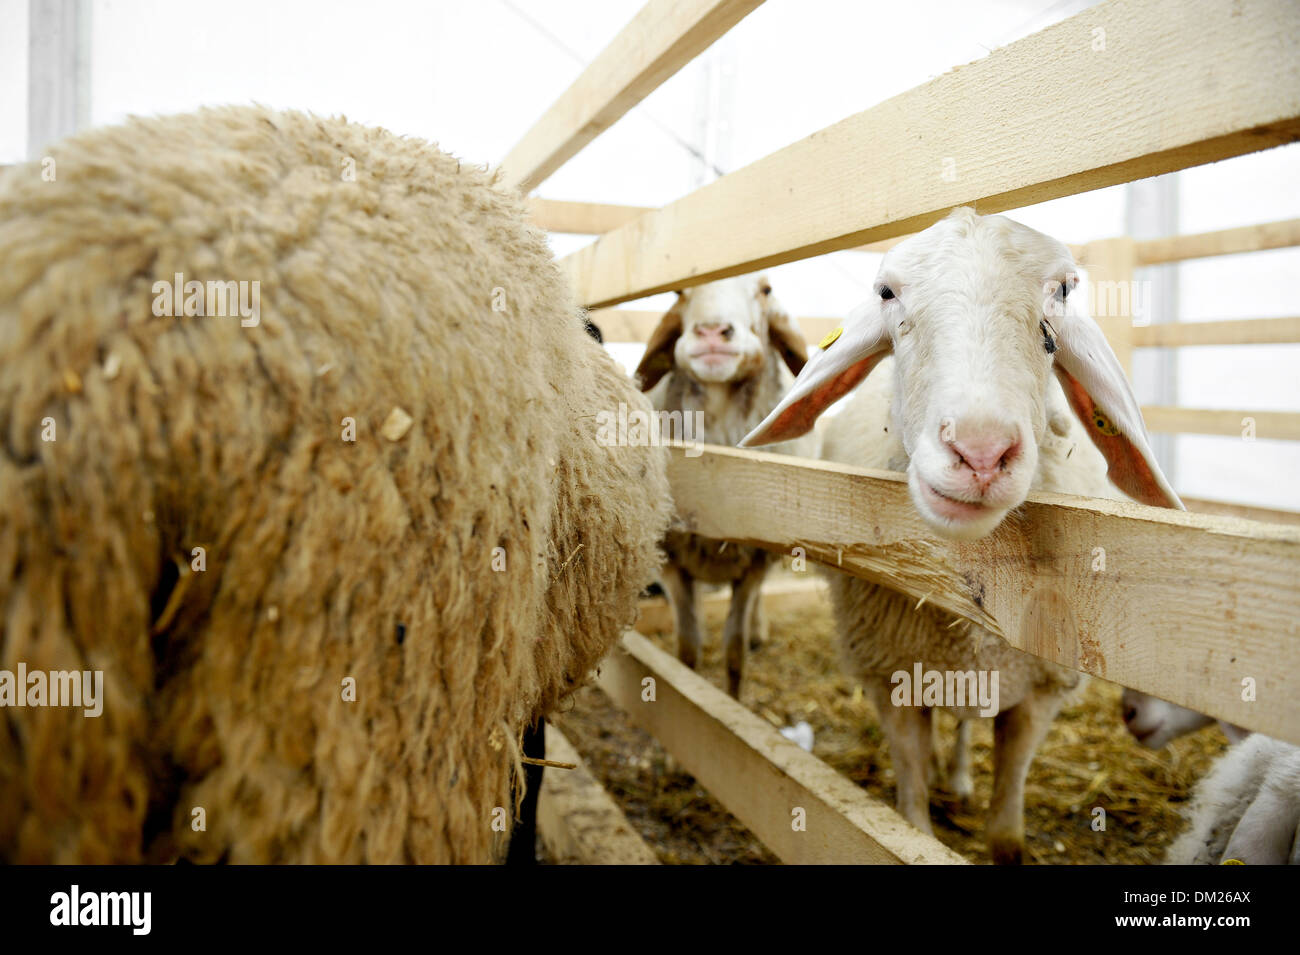 Curioso ovejas dentro de una pluma en una feria agropecuaria Foto de stock